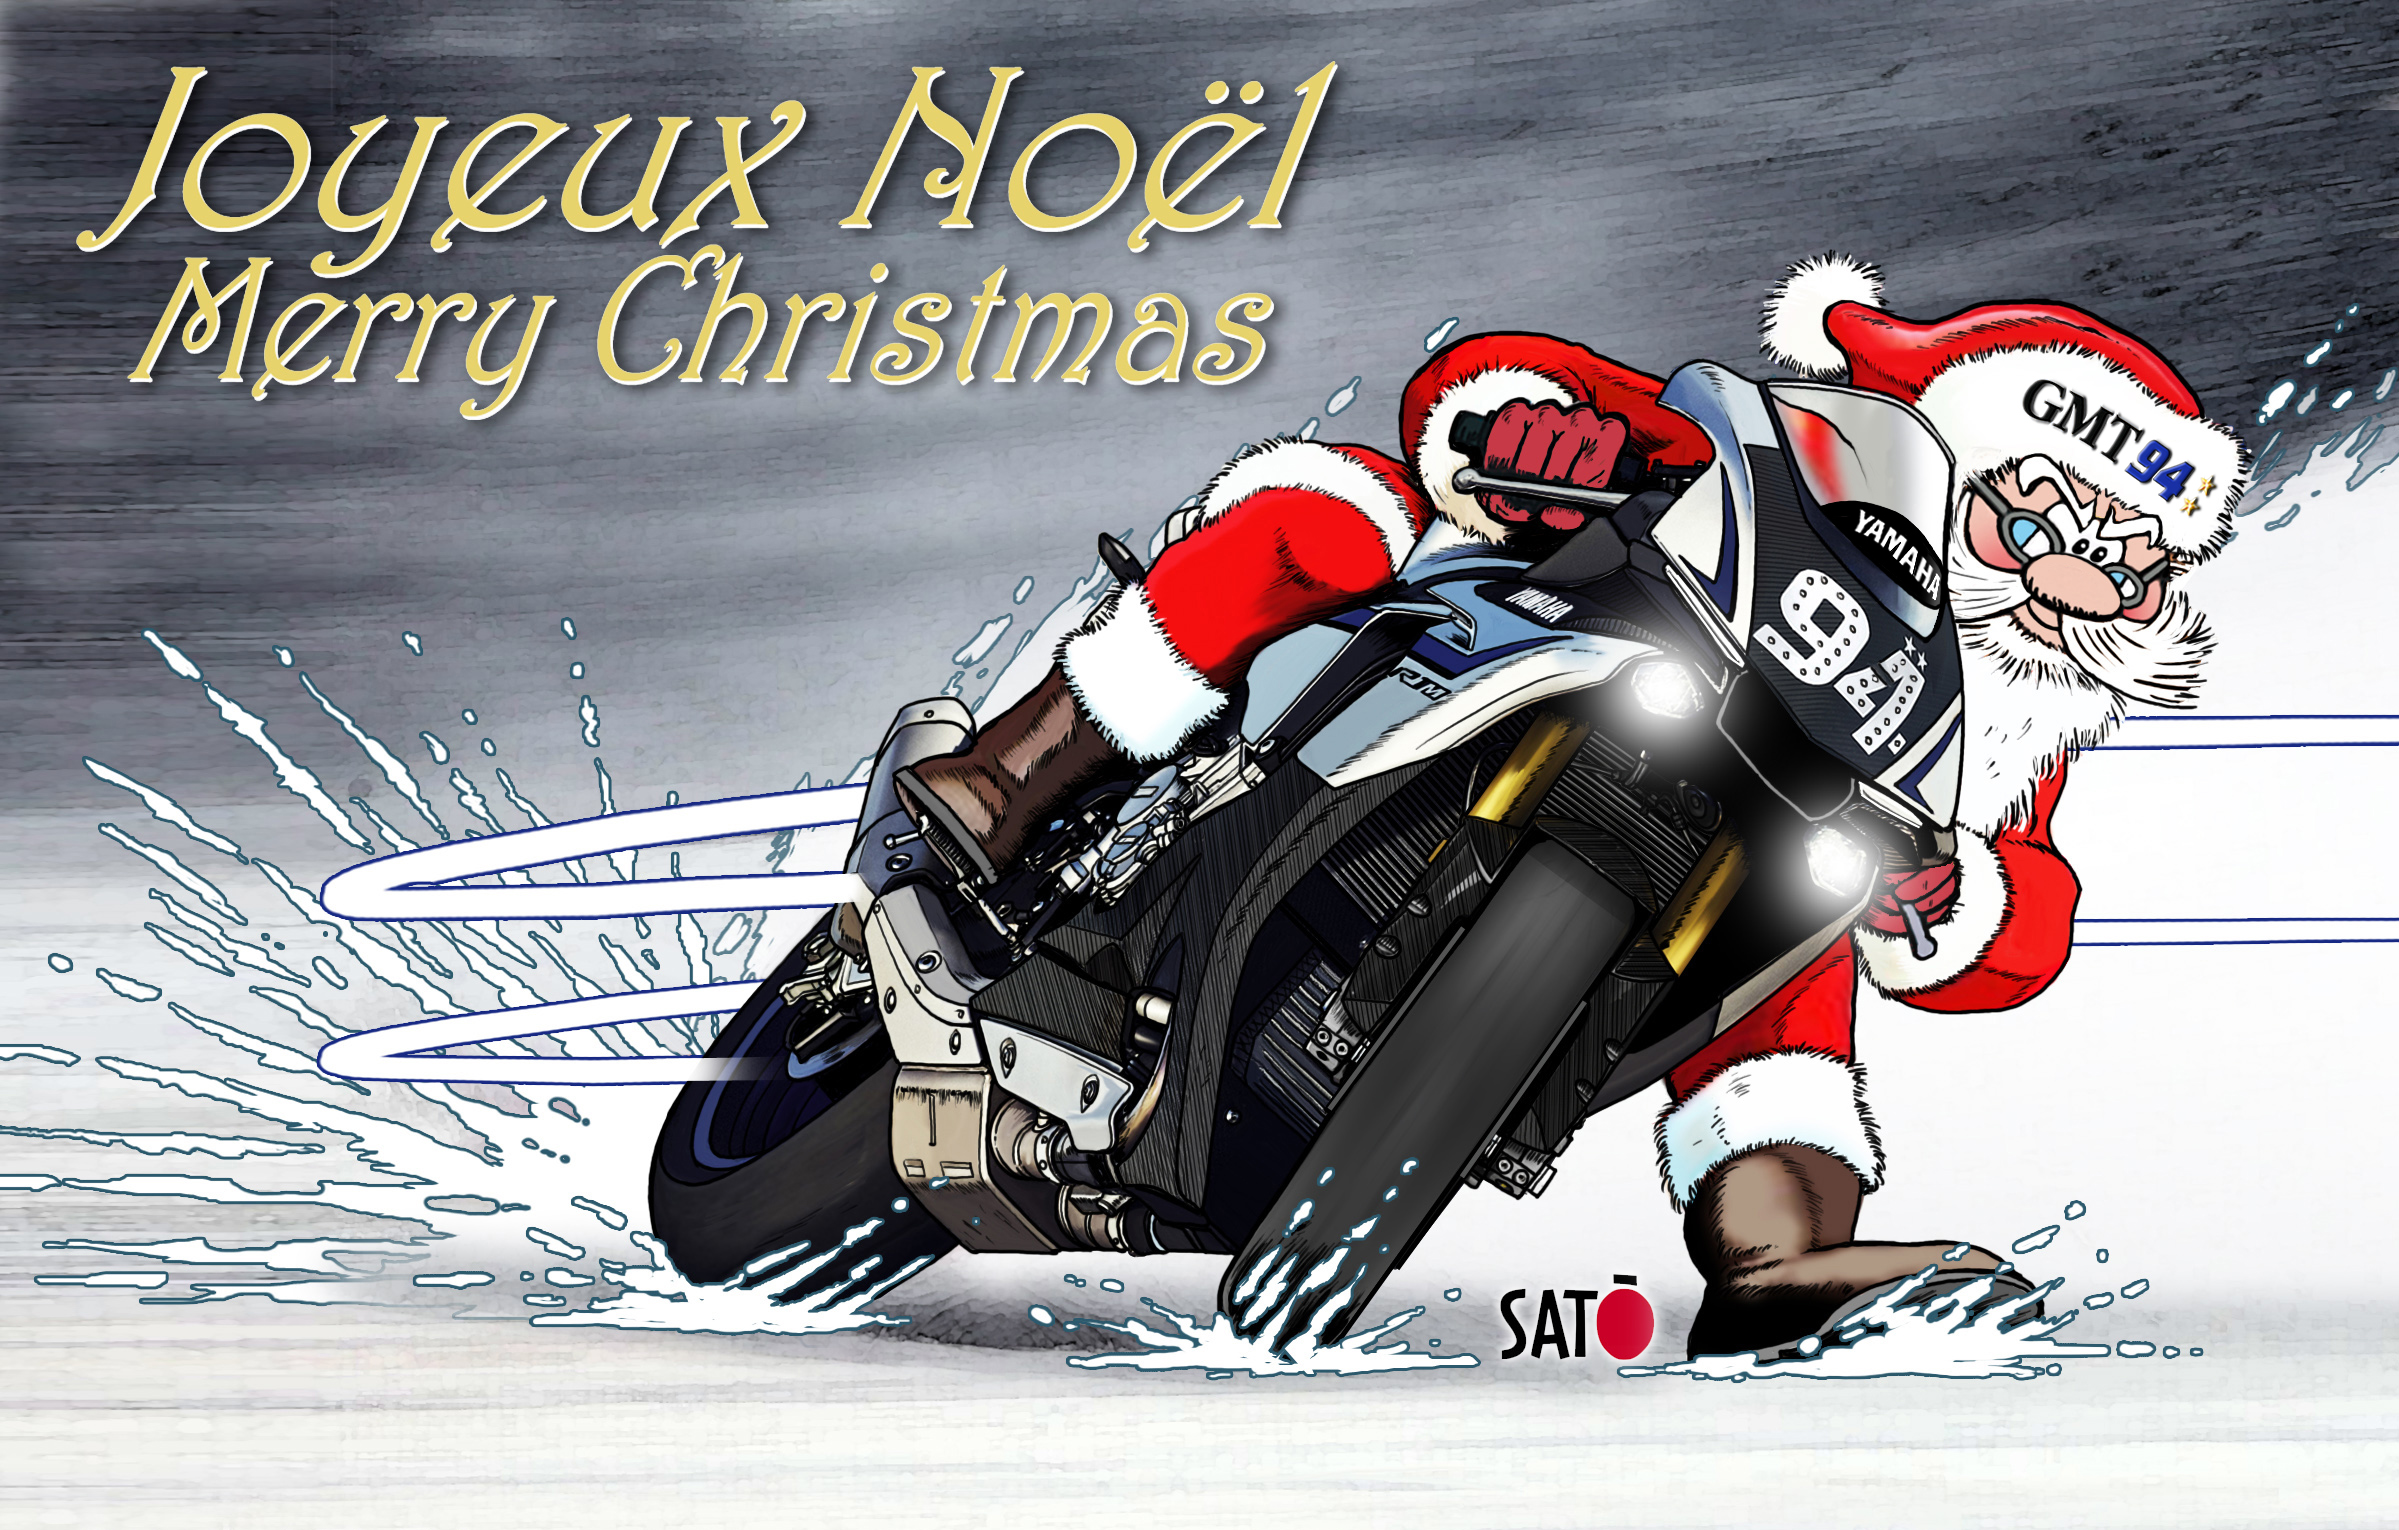 Préparez Noël avec Dafy Moto ! Large de choix de cadeaux moto pour tous !